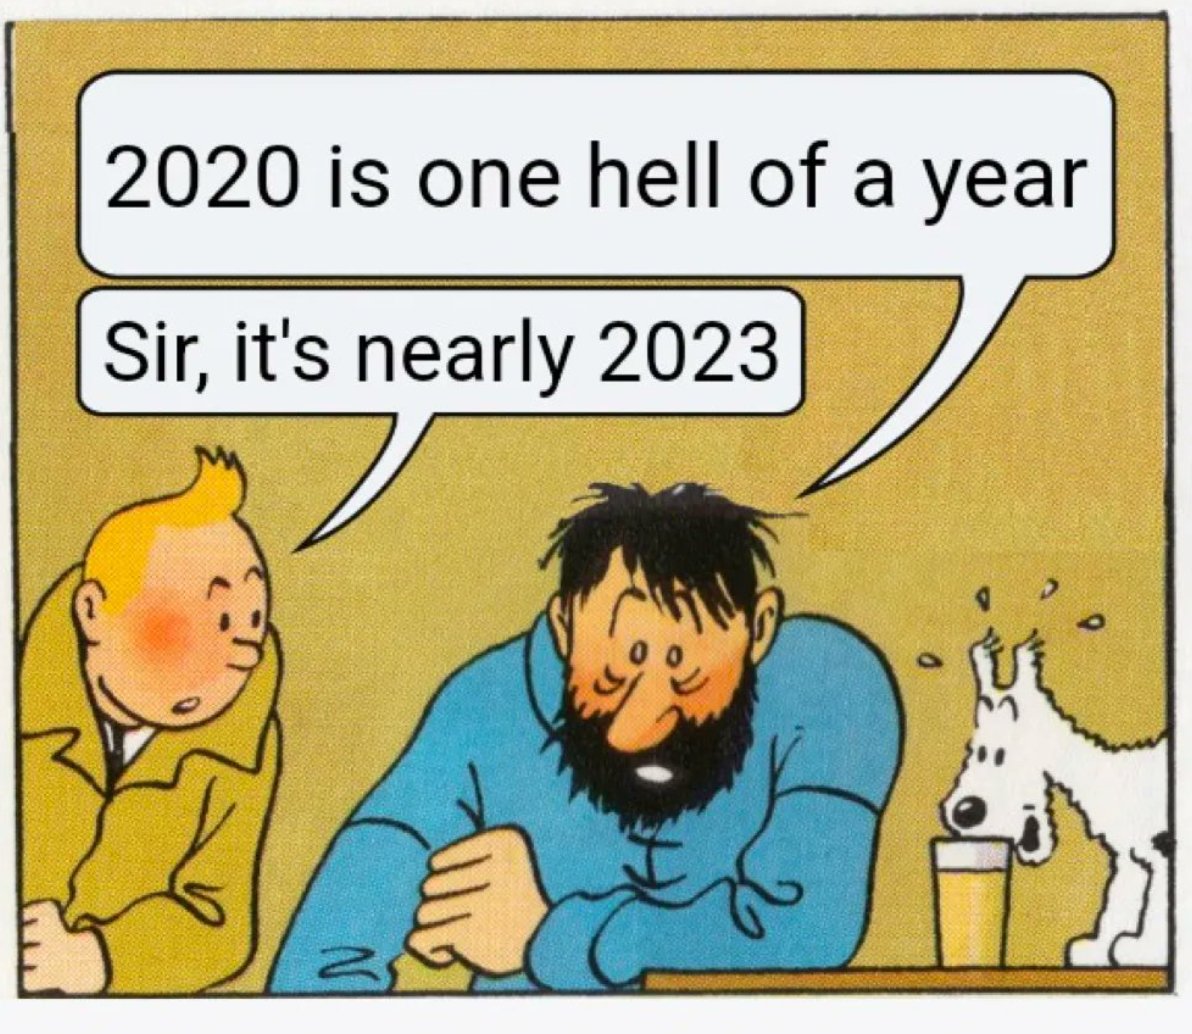 Season 3 of 2020 happening soon!